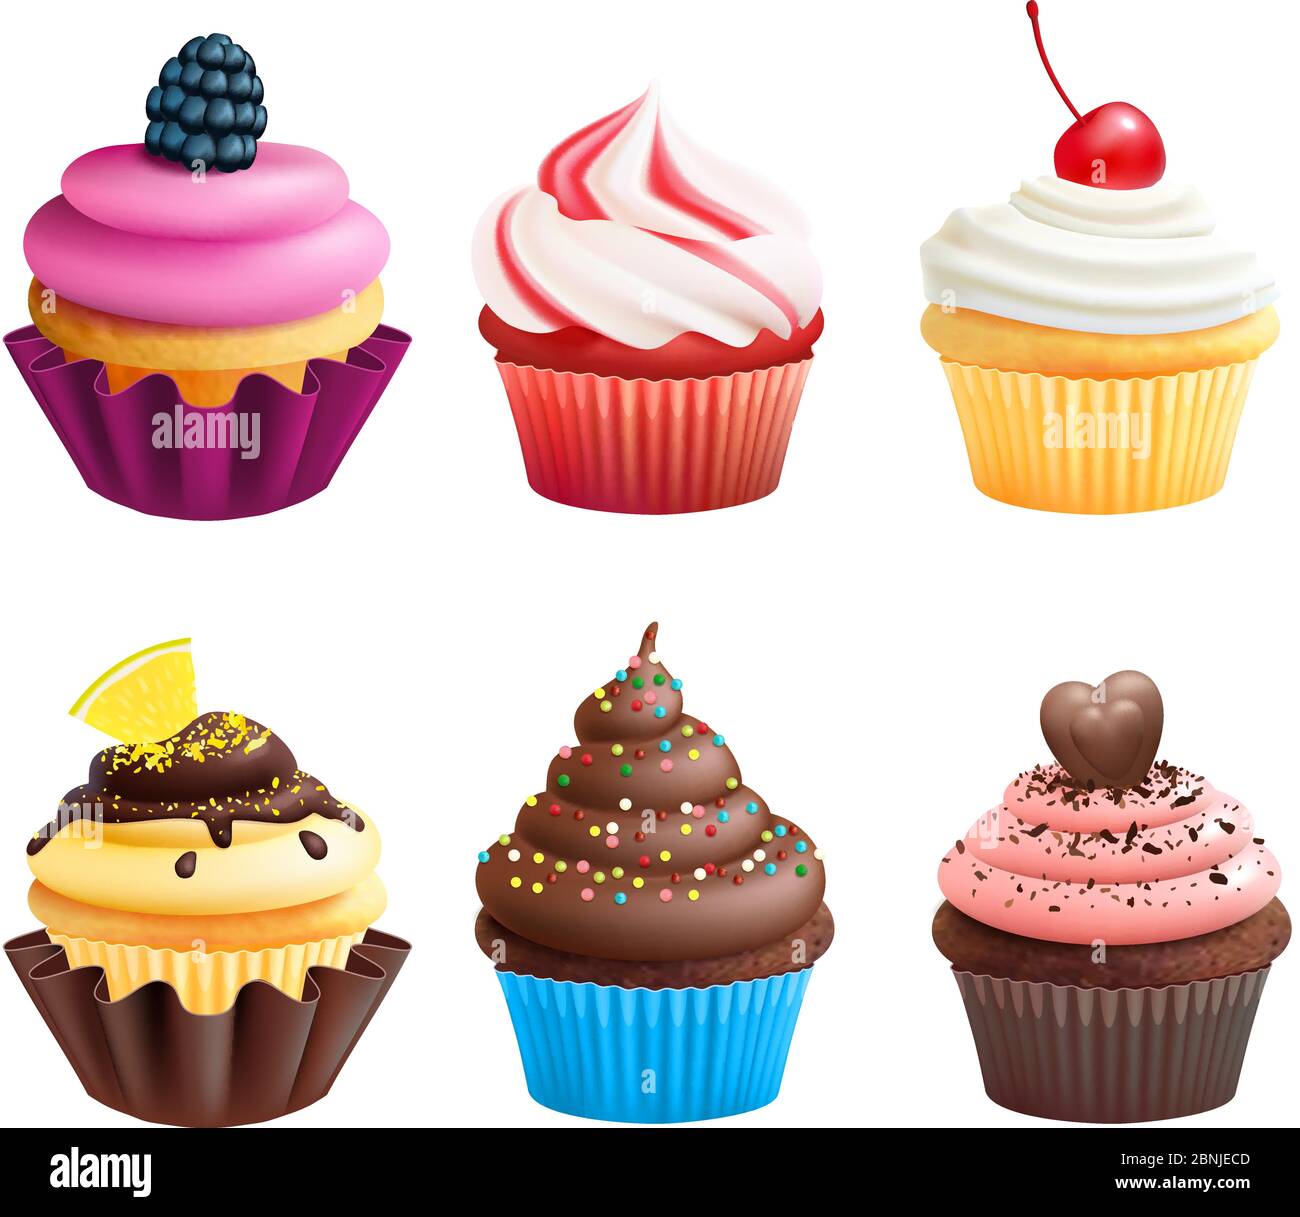 Illustrazioni vettoriali realistiche di cupcakes. Dolci per feste di compleanno Illustrazione Vettoriale